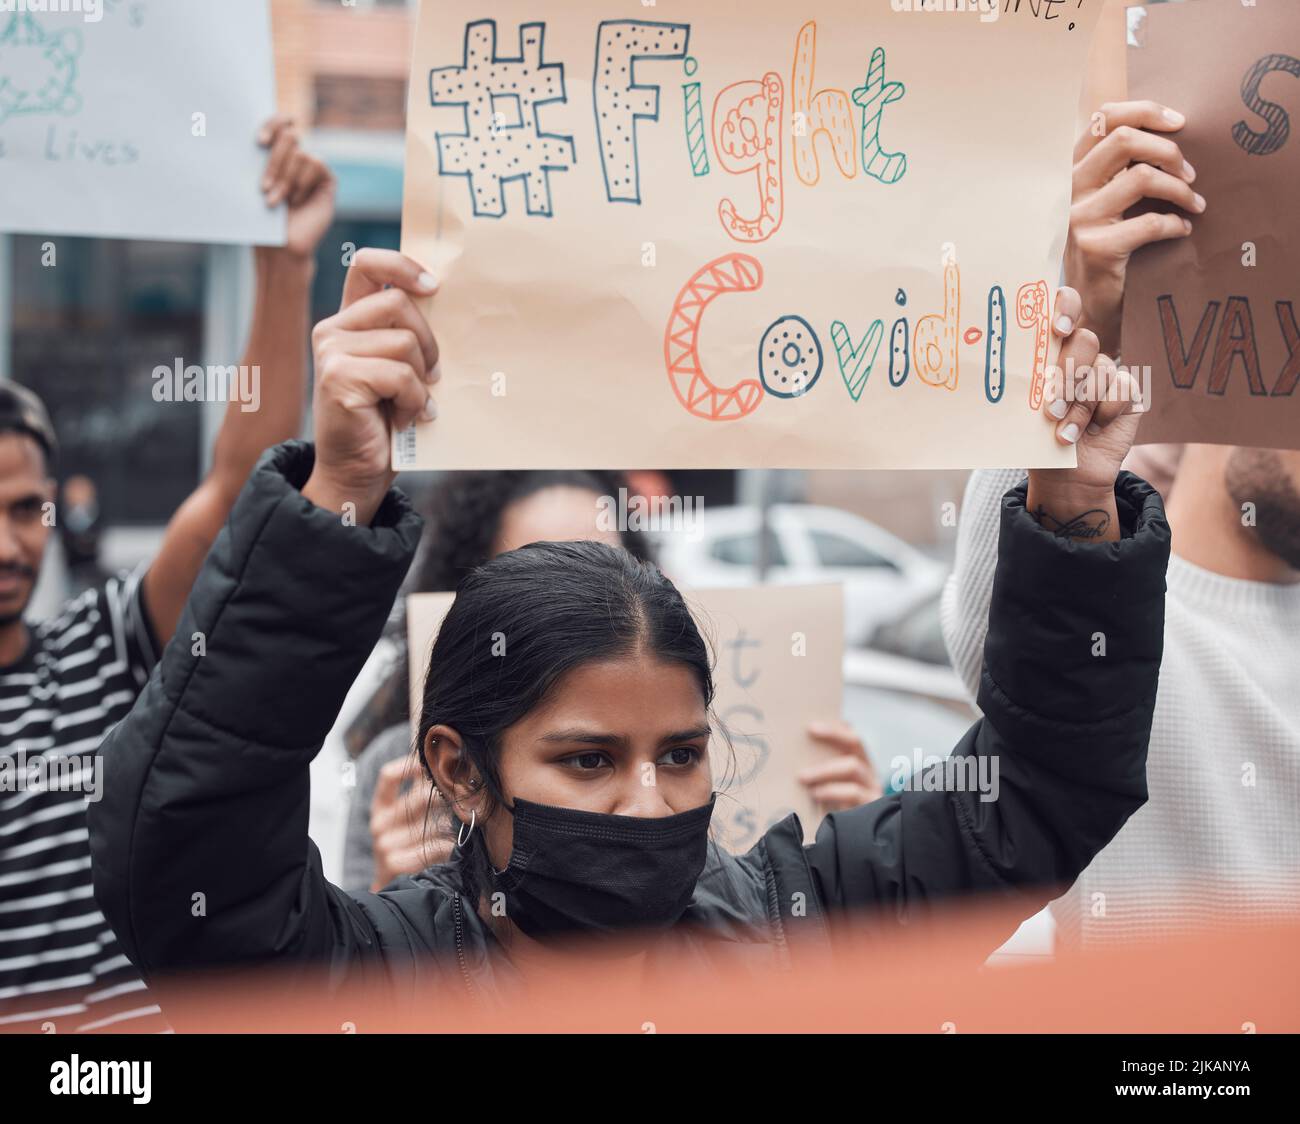 Combattez le covid. Une jeune femme attrayante tenant un panneau protestant contre le vaccin contre le covid 19 avec d'autres manifestants en arrière-plan. Banque D'Images